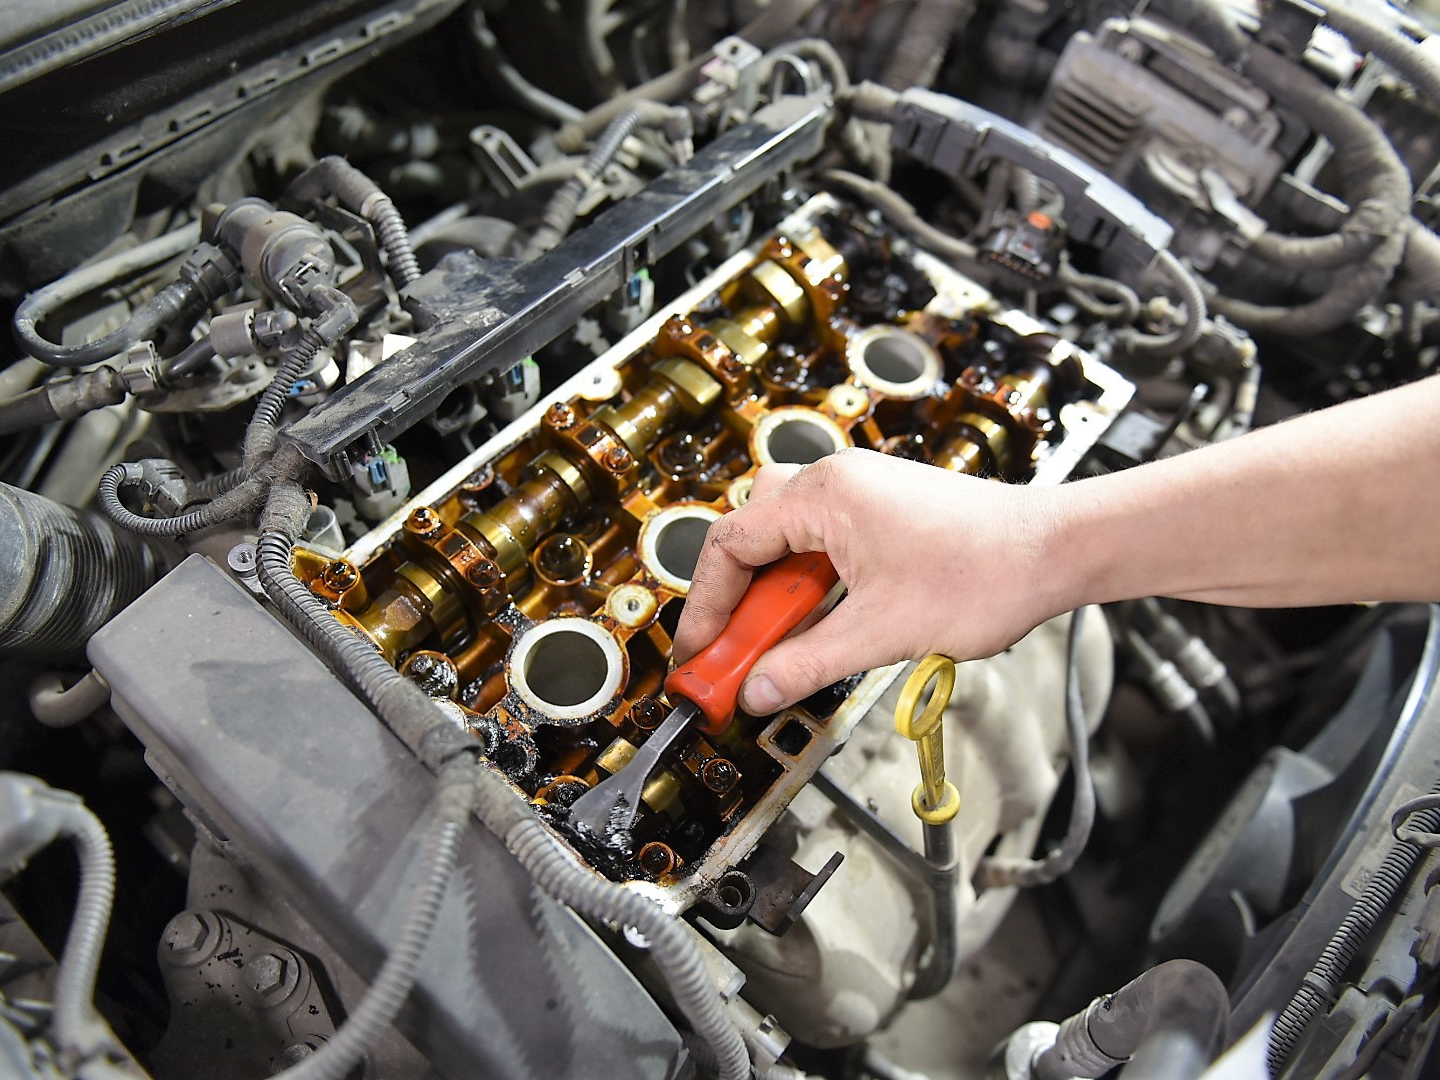 Переборка двигателя. Капитальный ремонт двигателя. Капиталка дизельного двигателя. Капитальный ремонт двигателя автомобиля.